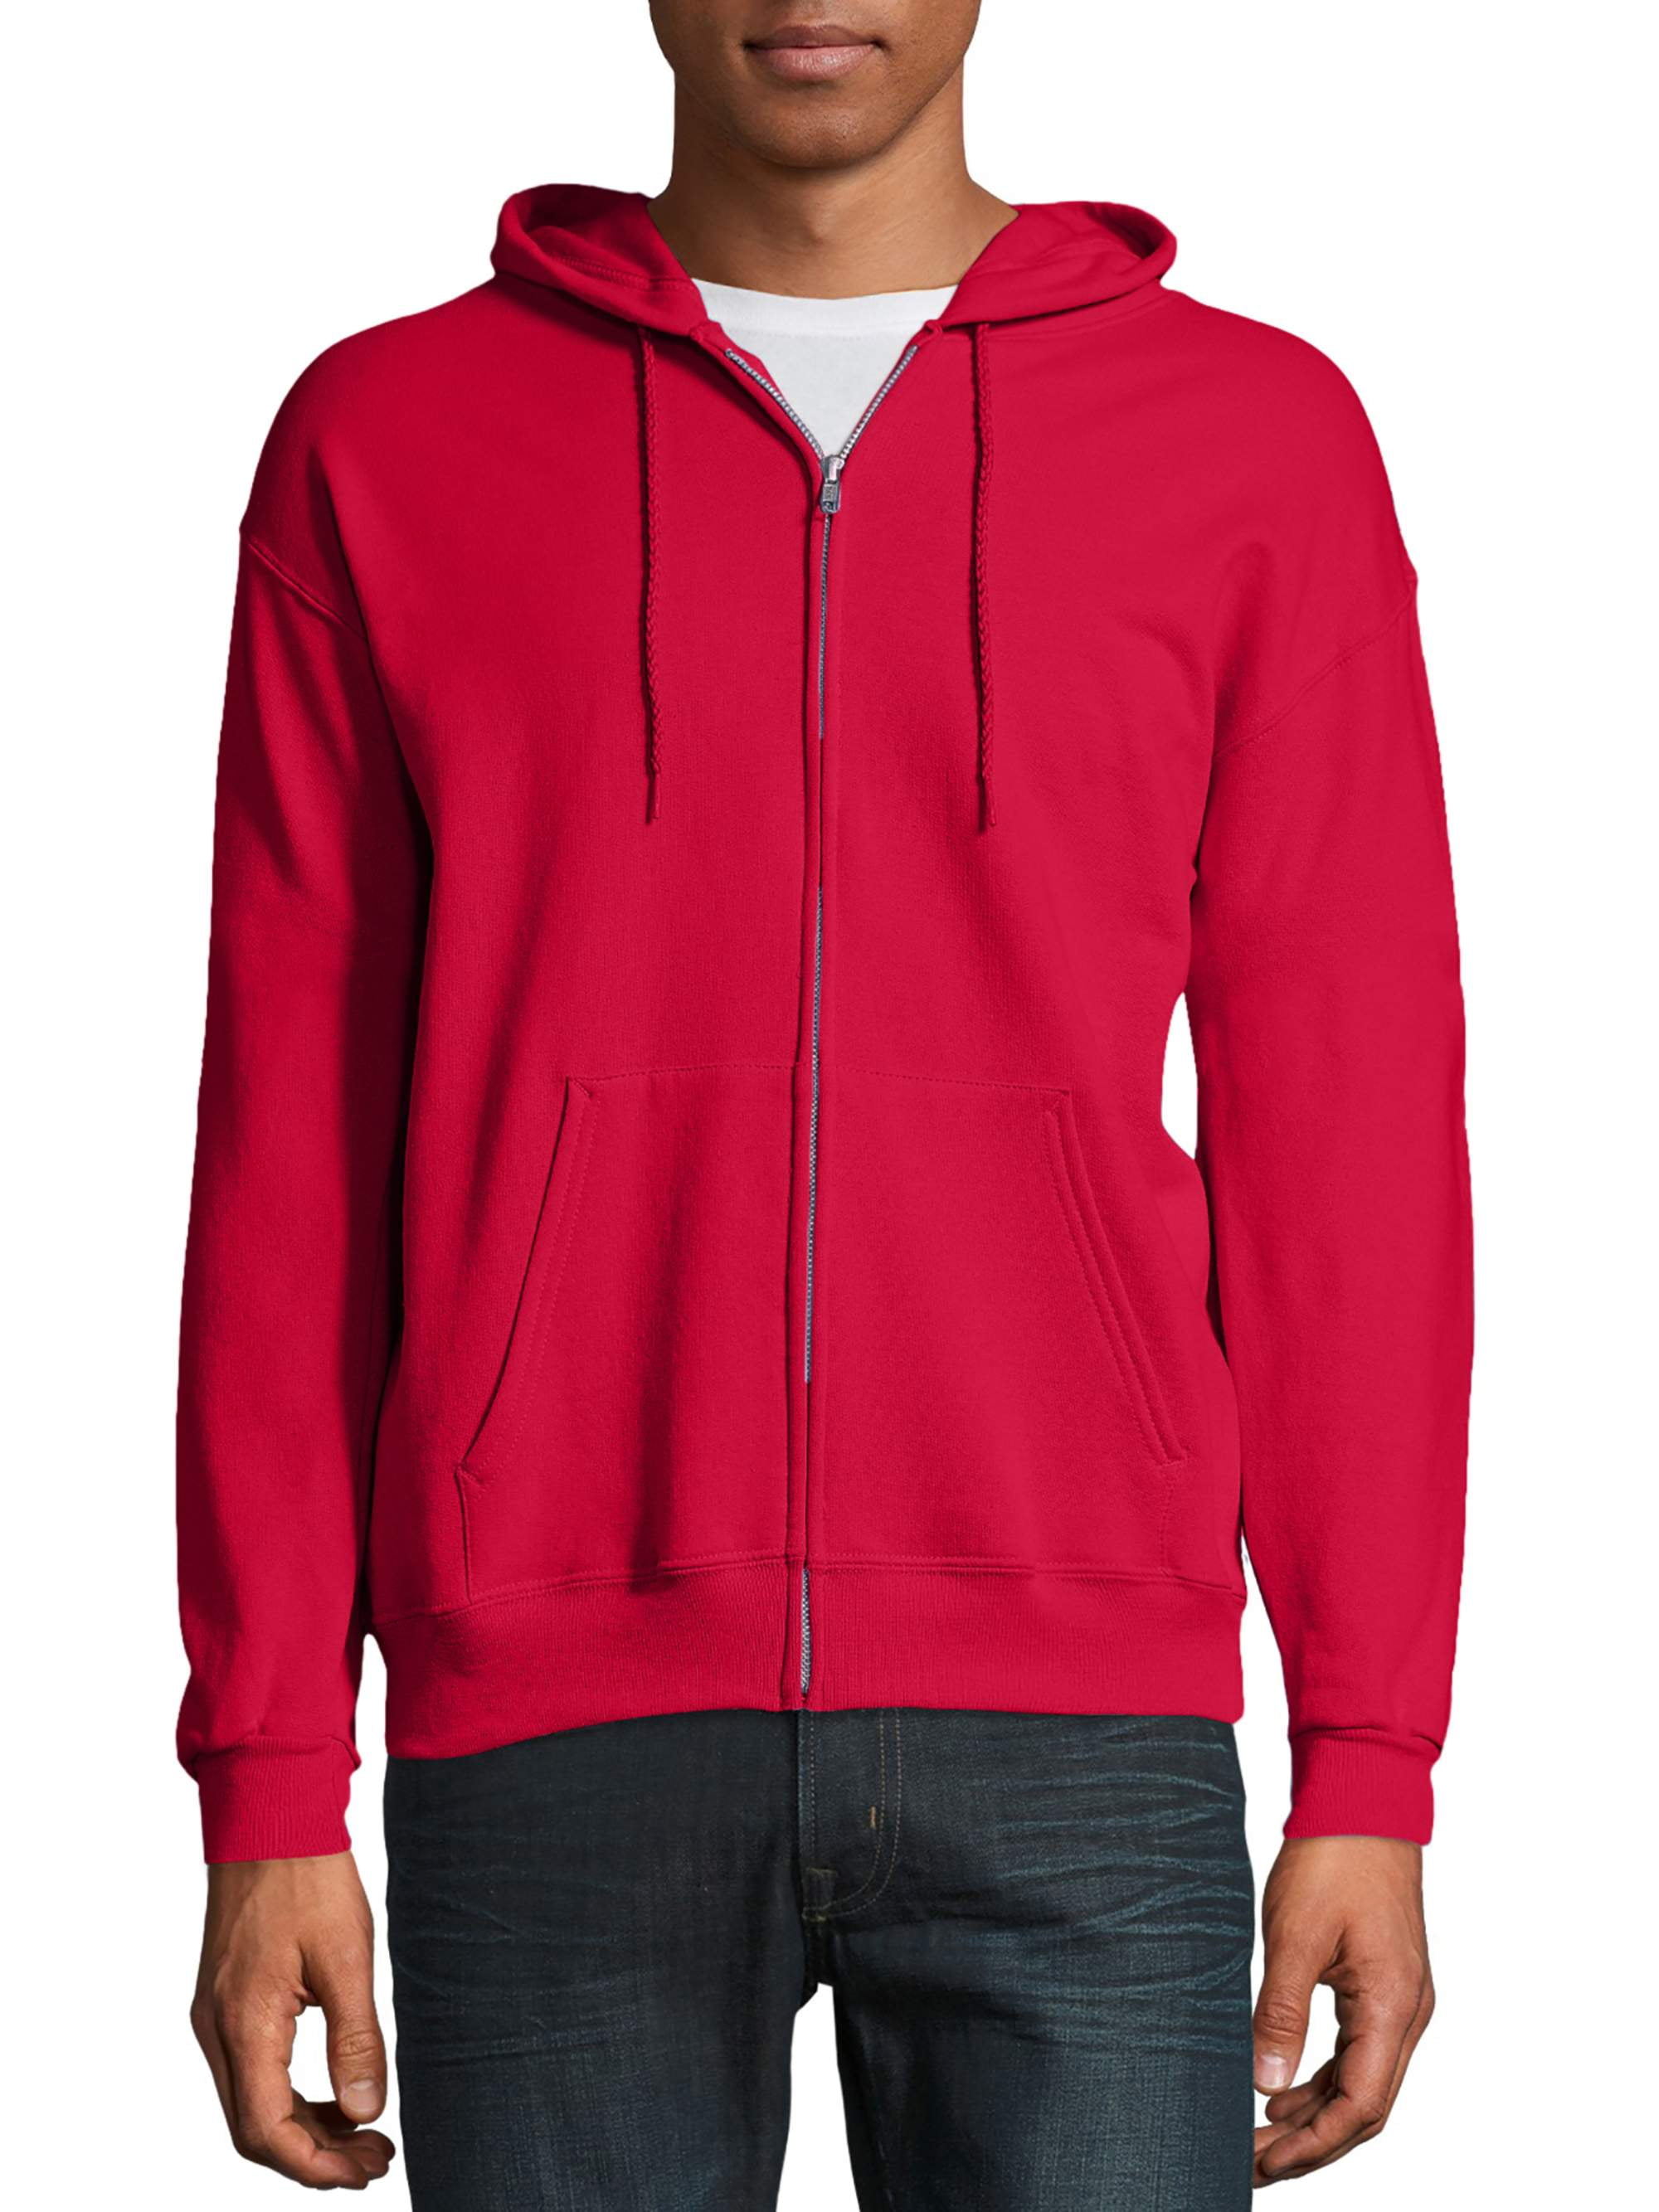 plain red hoodie walmart